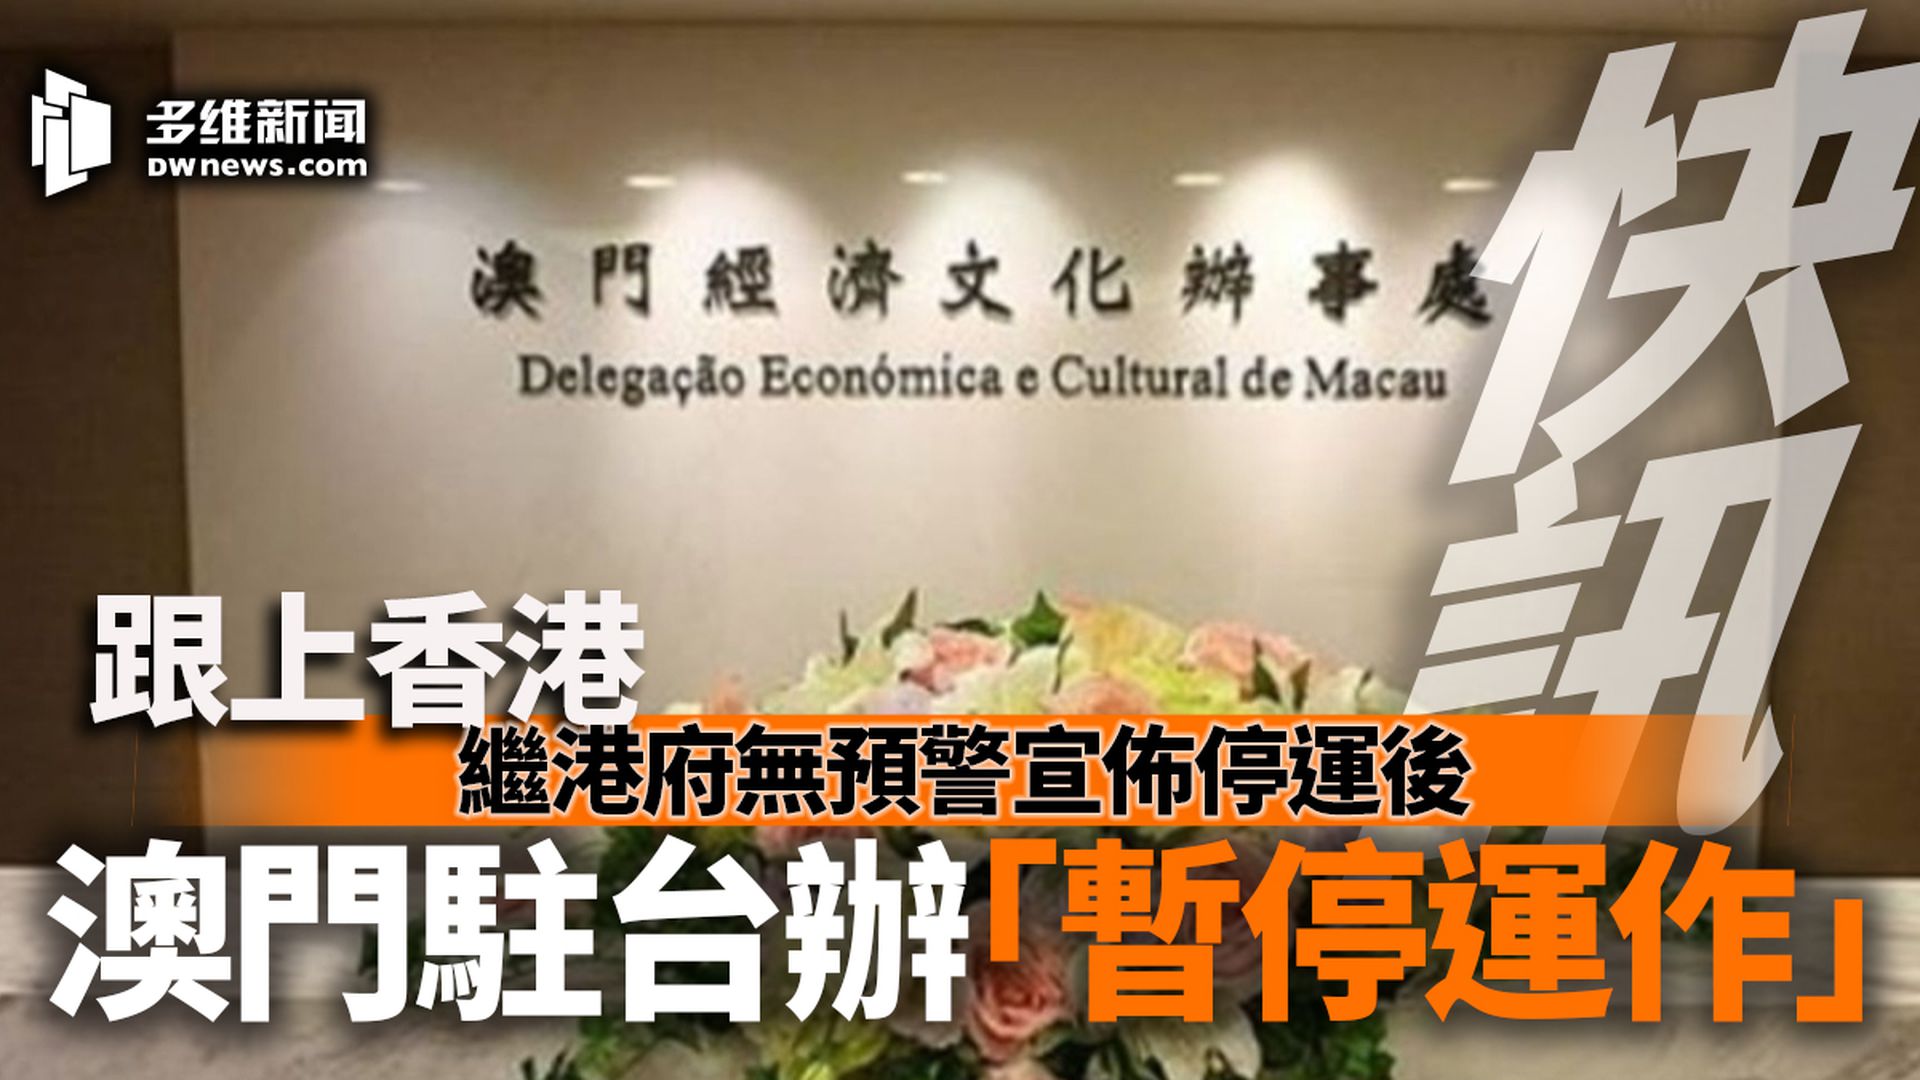 向香港看齐澳门宣布停止运作驻台办事处 多维新闻 台湾